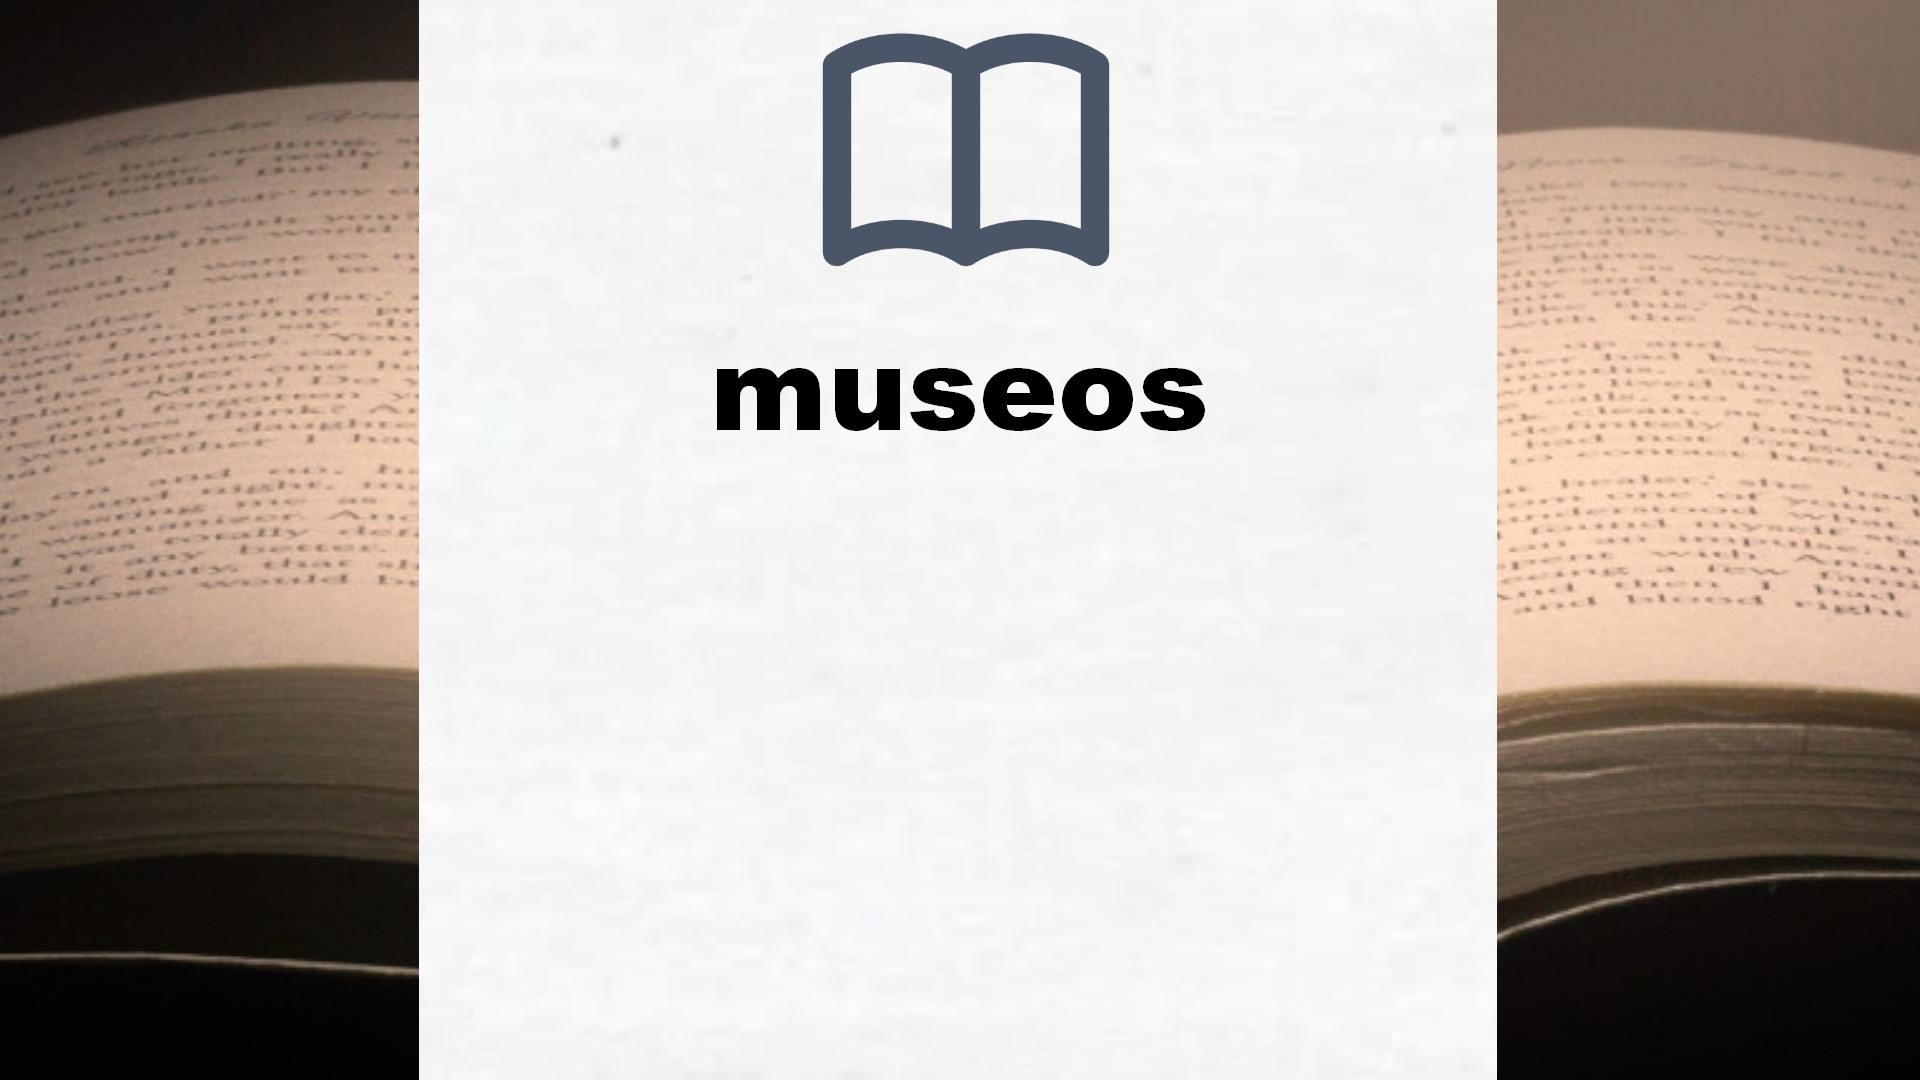 Libros sobre museos